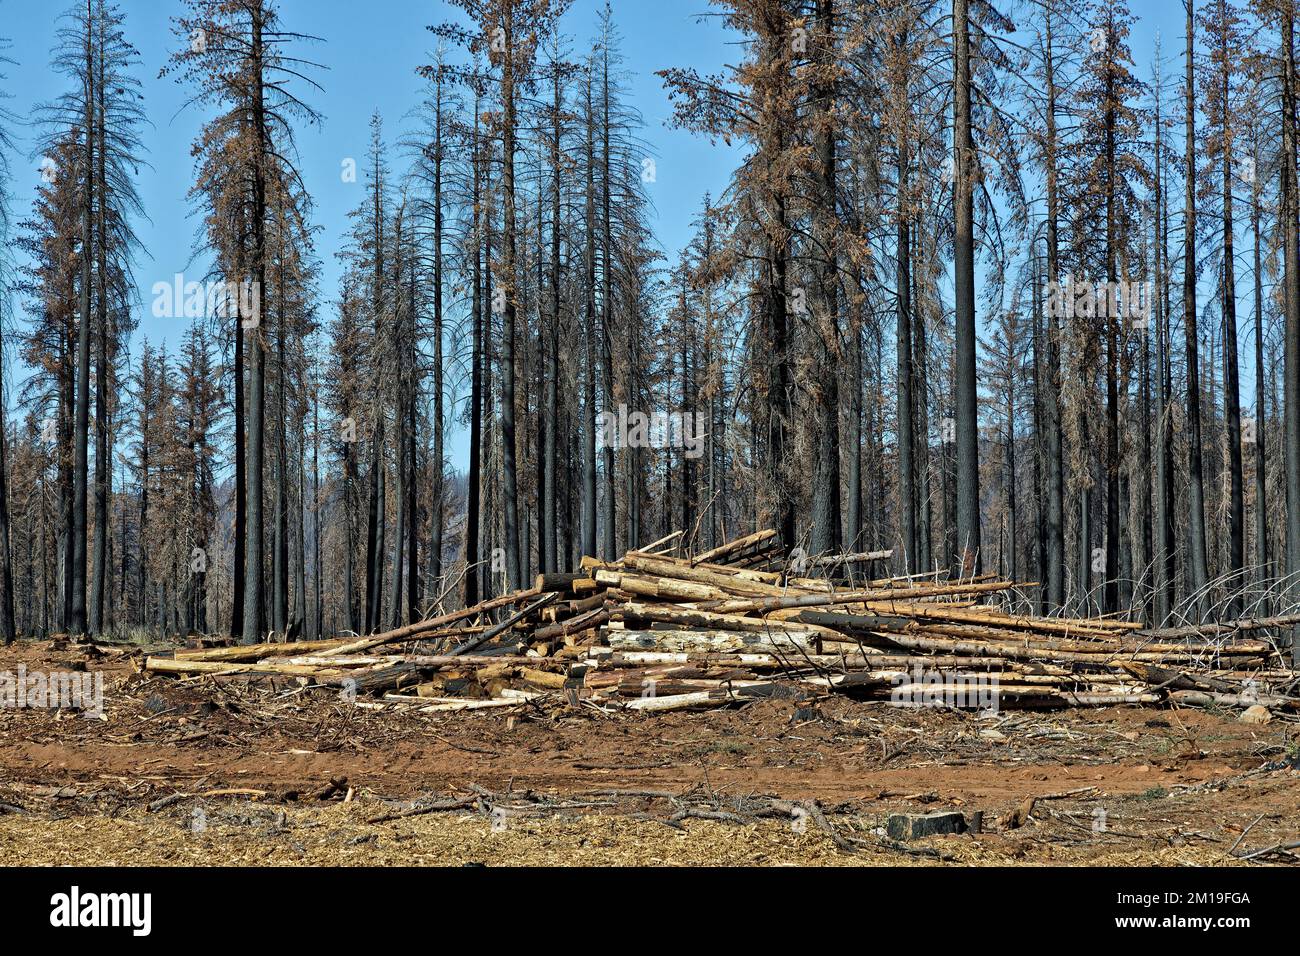 Bergung verbrannter Bäume, die durch Waldbrände entstanden sind, die den jungen Douglas Fir, Ponderosa & Sugar Pine, Highway 36, Kalifornien, befallen. Stockfoto